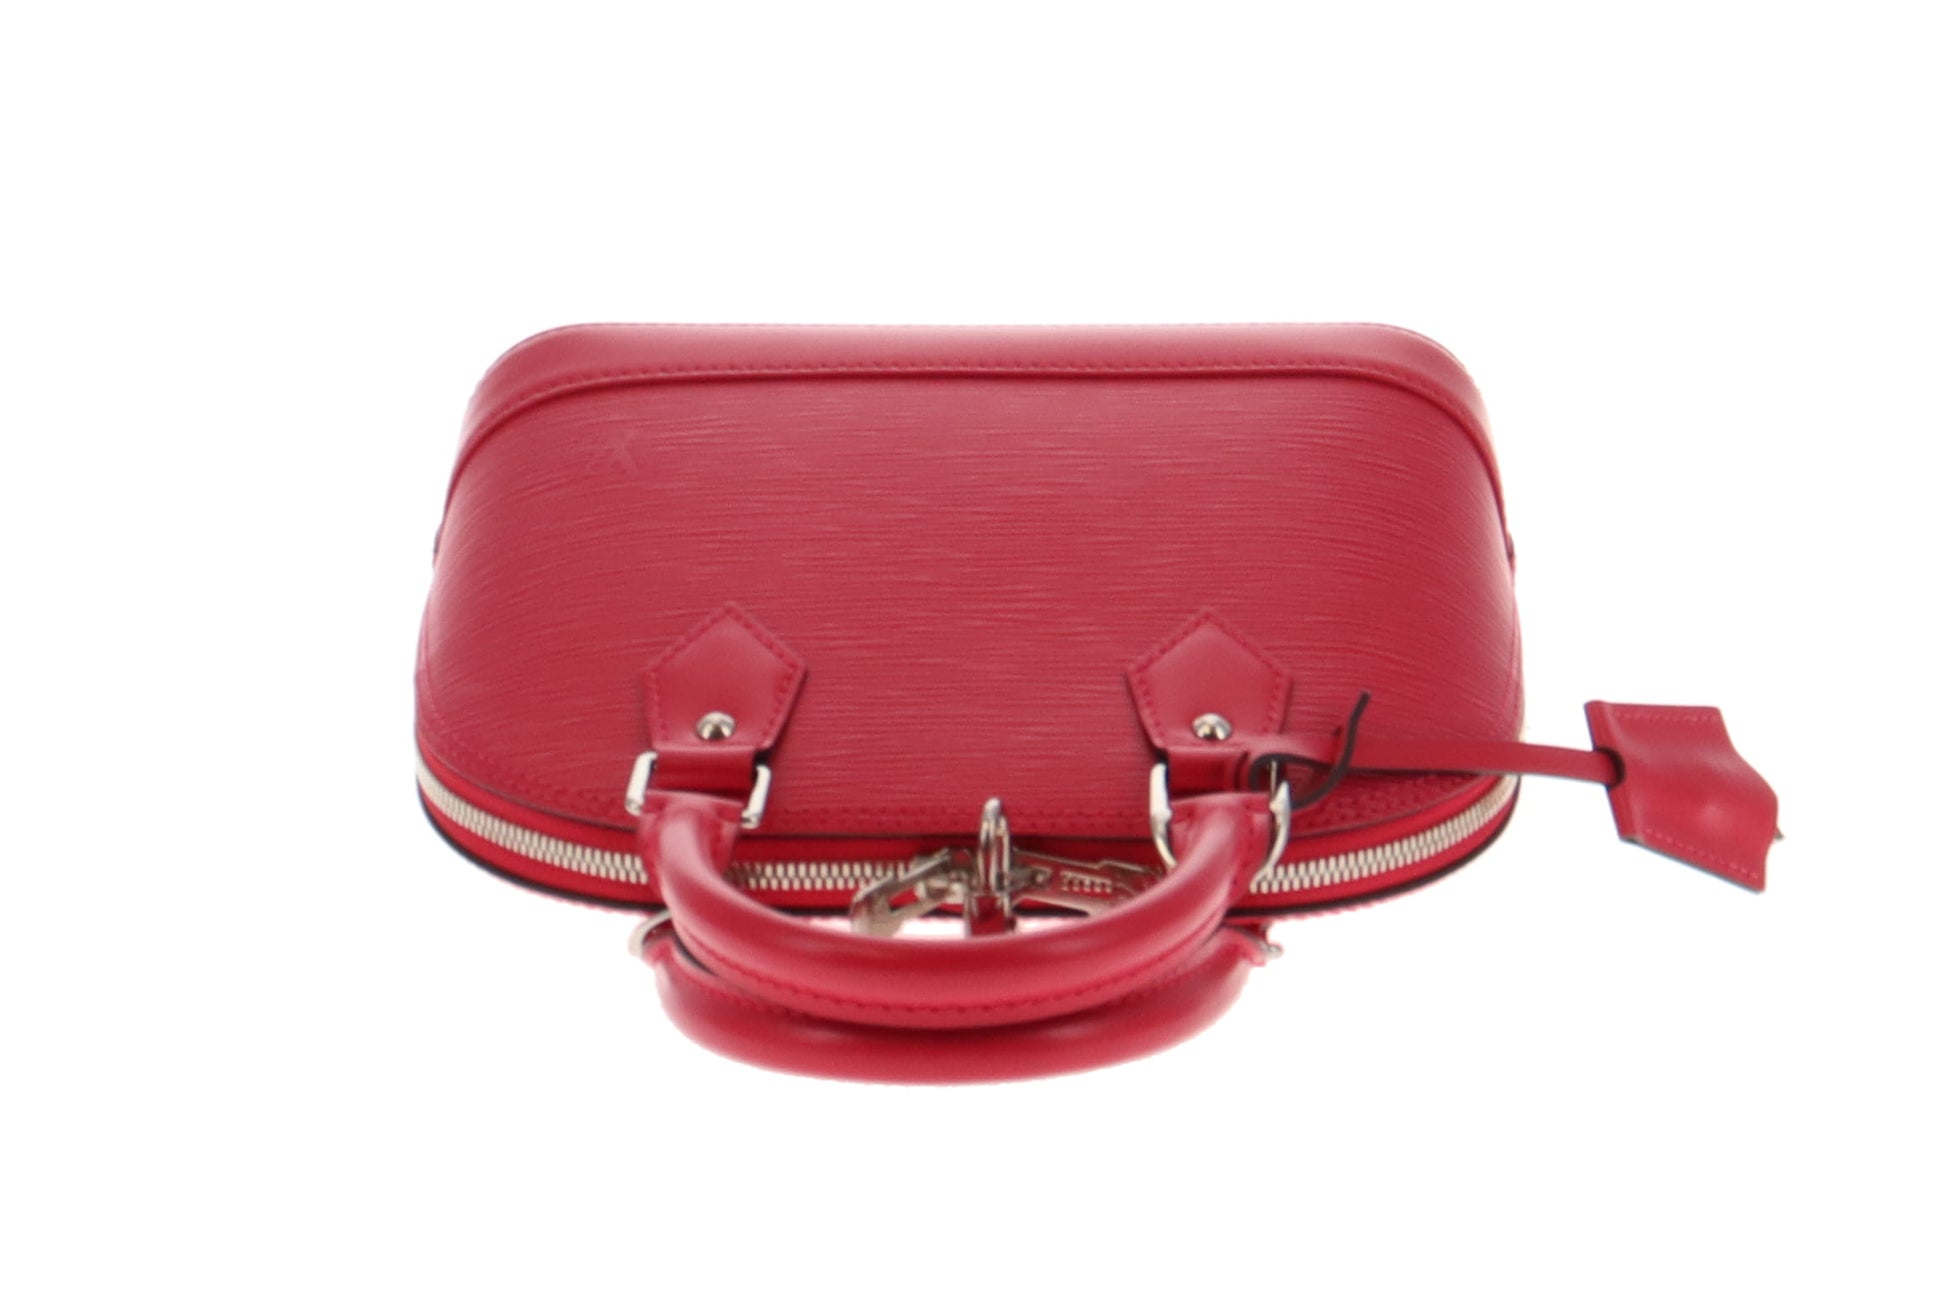 Louis Vuitton - Authenticated Néonoé Bb Handbag - Leather Pink Plain for Women, Very Good Condition